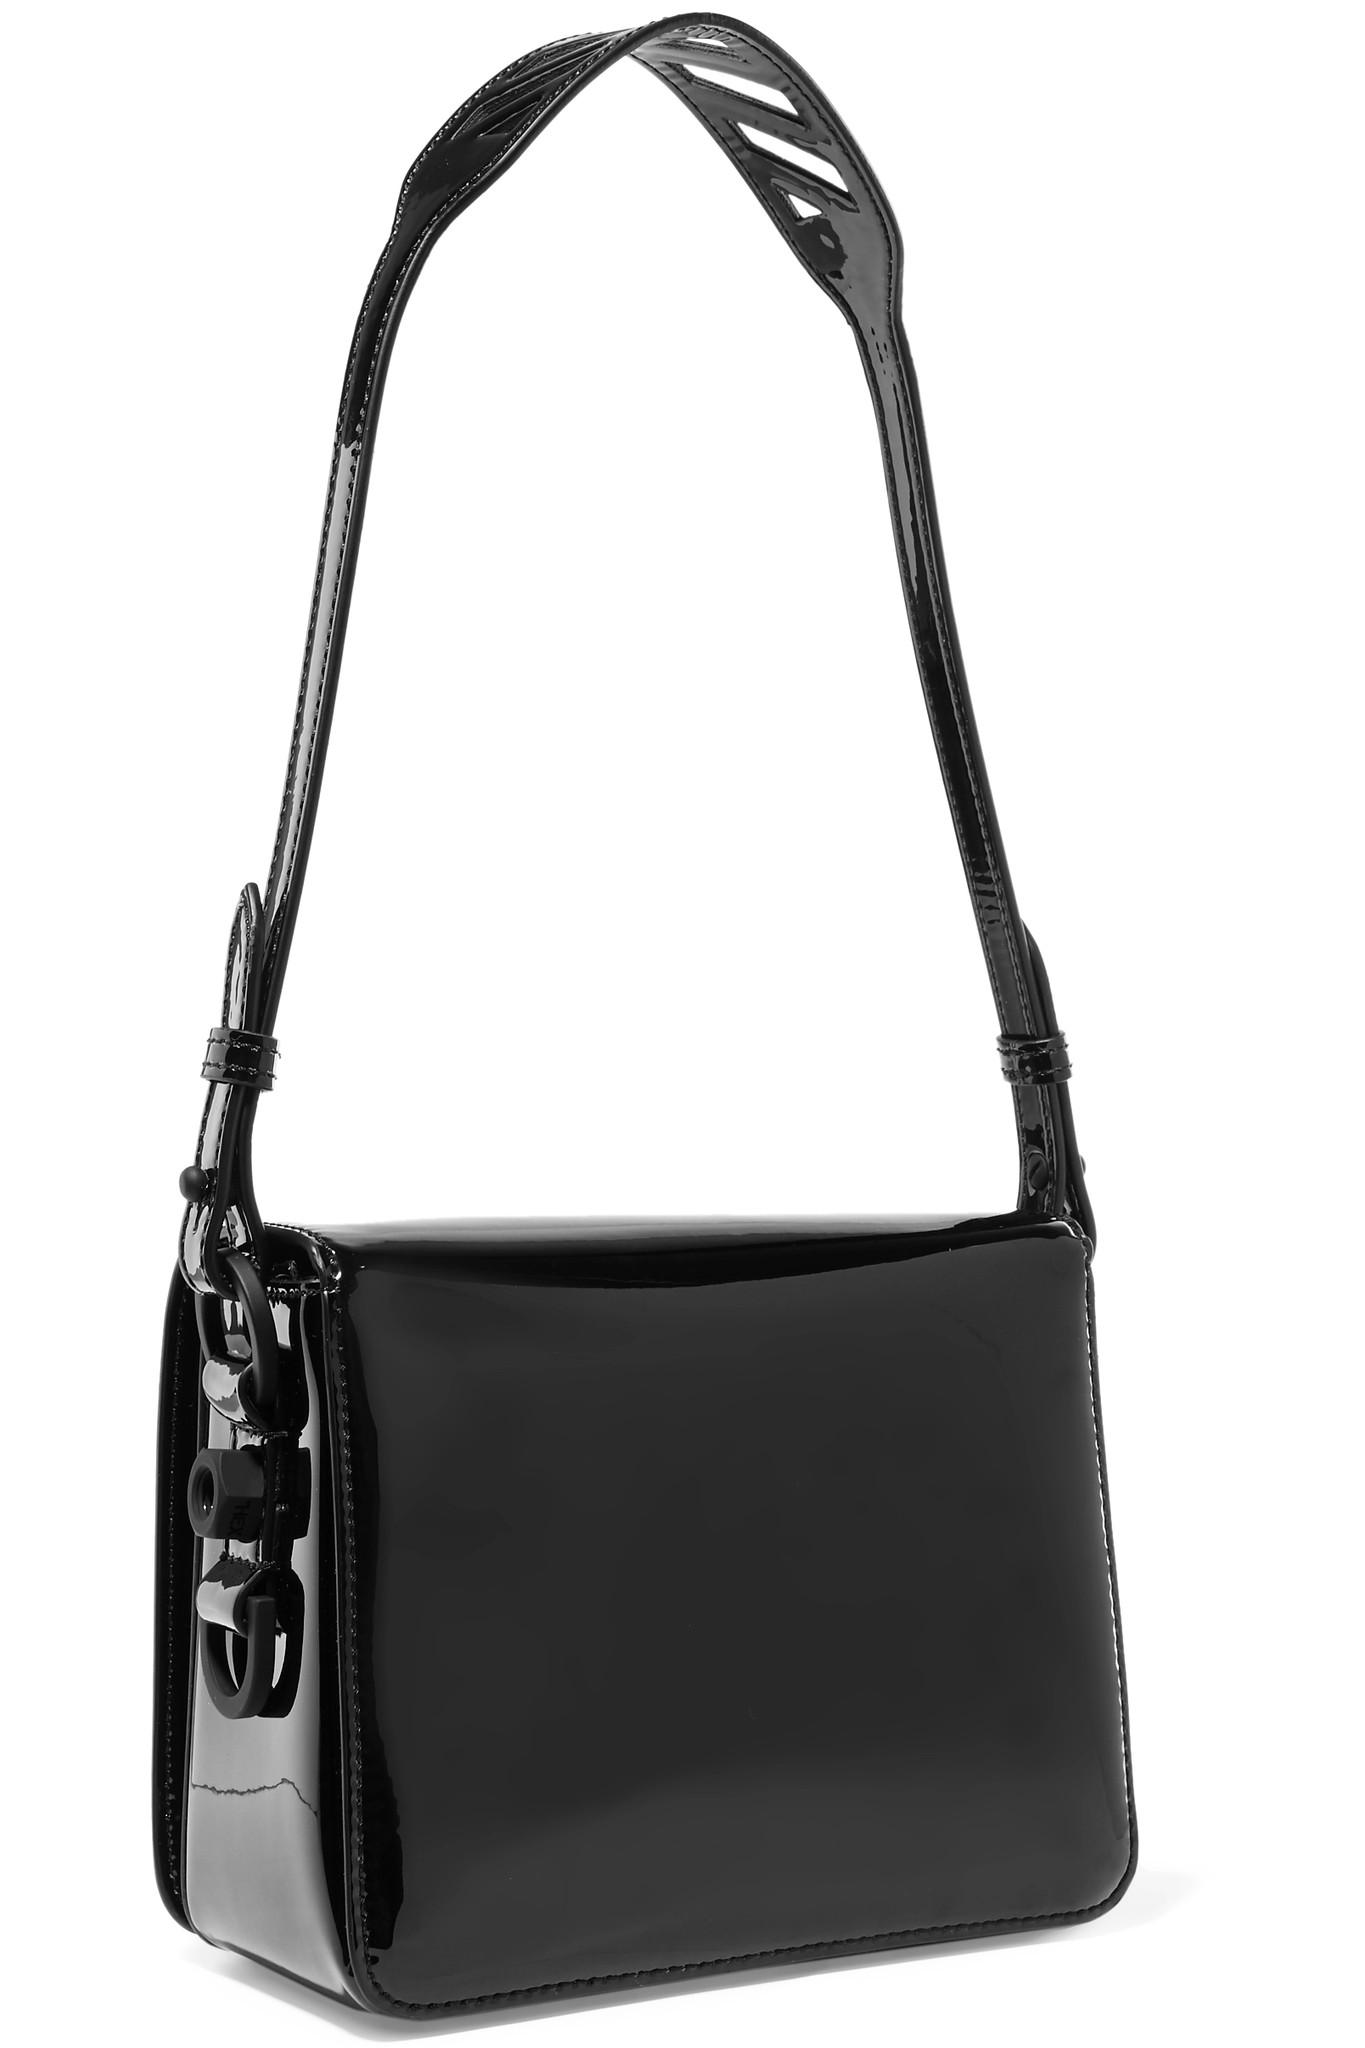 Off-White c/o Virgil Abloh Embellished Patent-leather Shoulder Bag in Black - Lyst